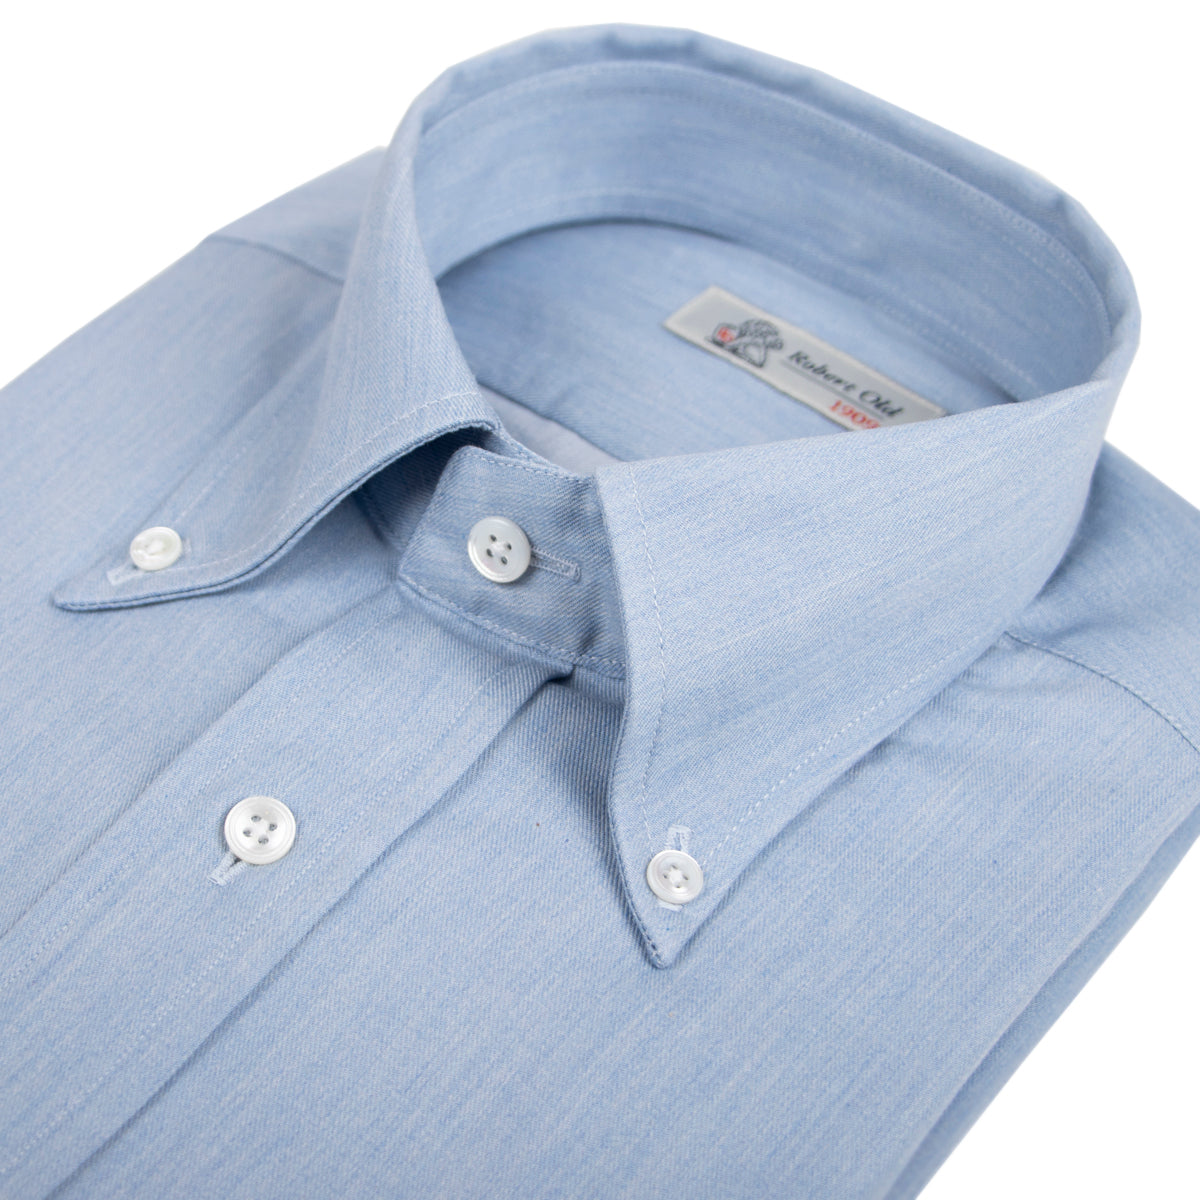 Light Denim 100% Cotton Long Sleeve Shirt  Robert Old   